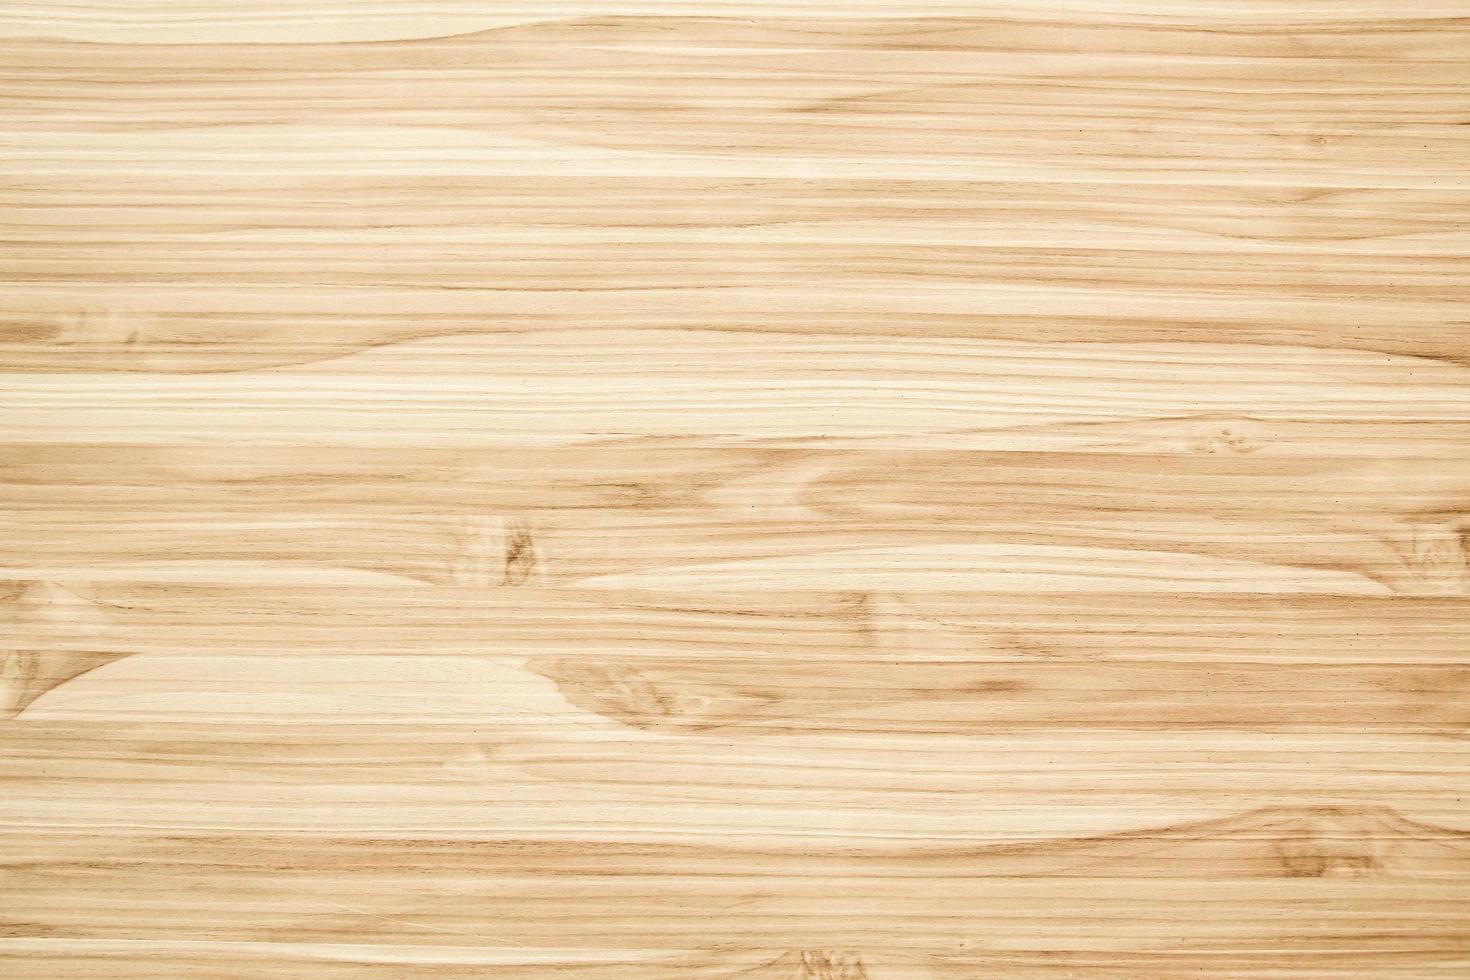 nahtlose Textur Holz alte Eiche oder moderne Holzstruktur foto